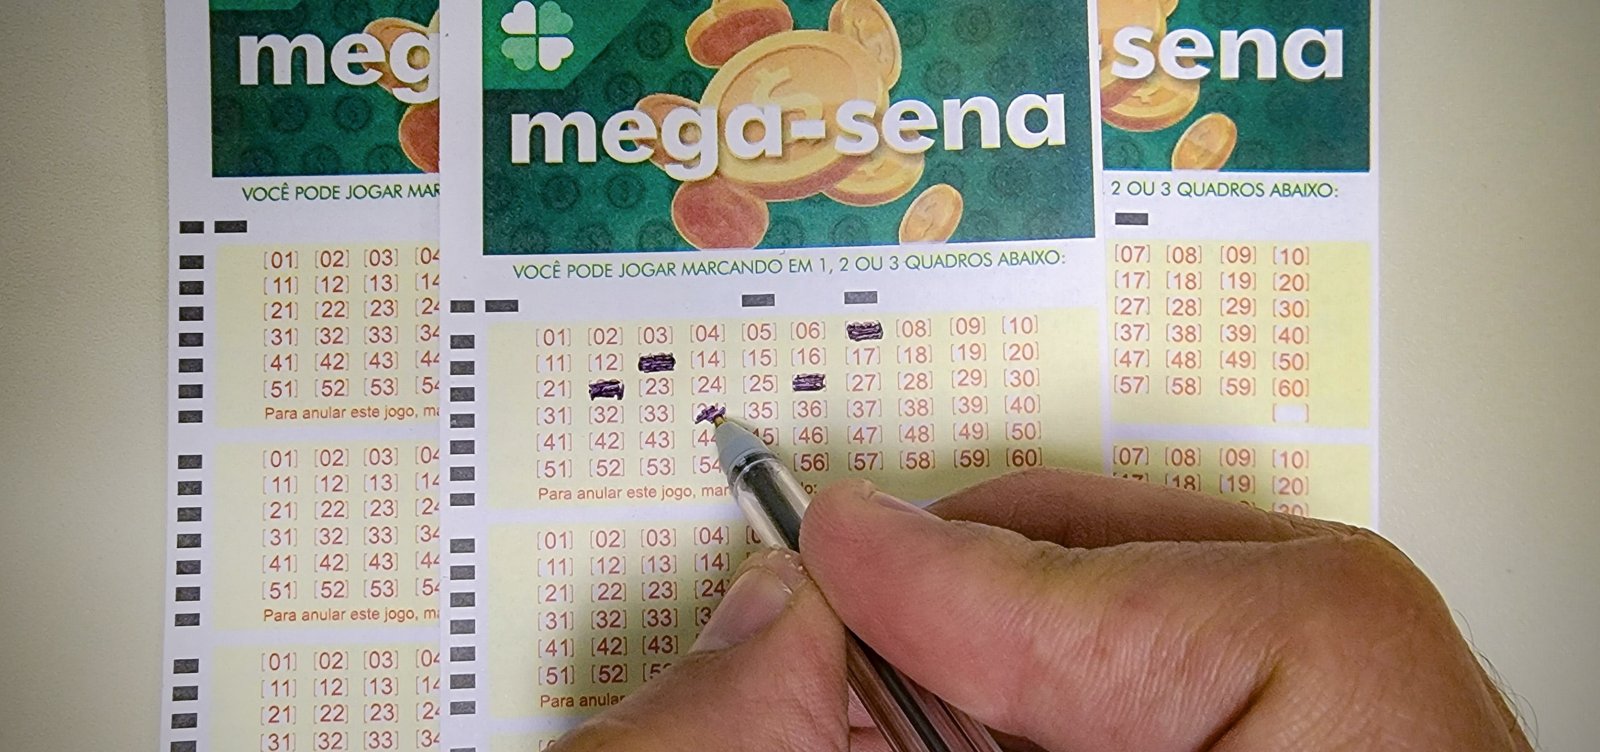 Somadas, três apostas baianas faturam R$ 155 mil no sorteio da Mega-Sena nesta terça-feira 